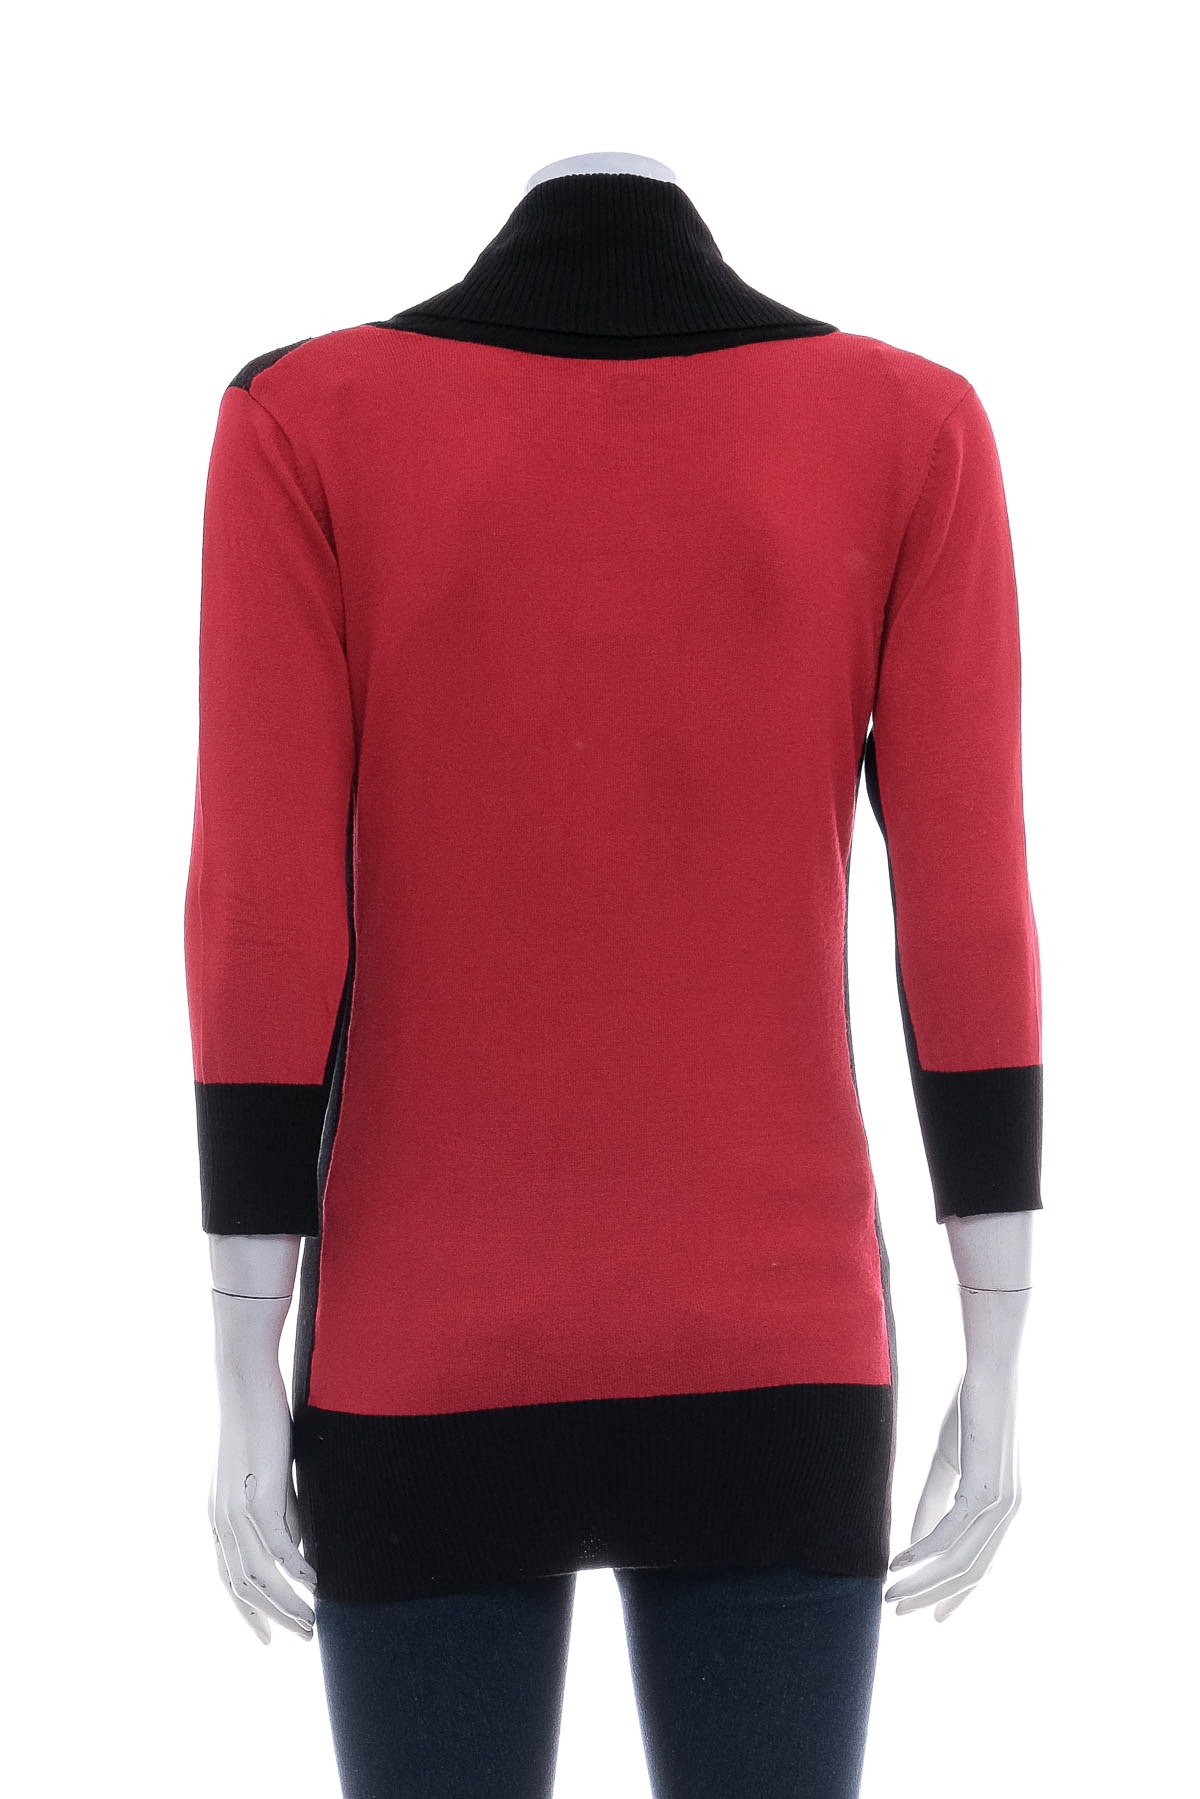 Women's sweater - A.Byer - 1